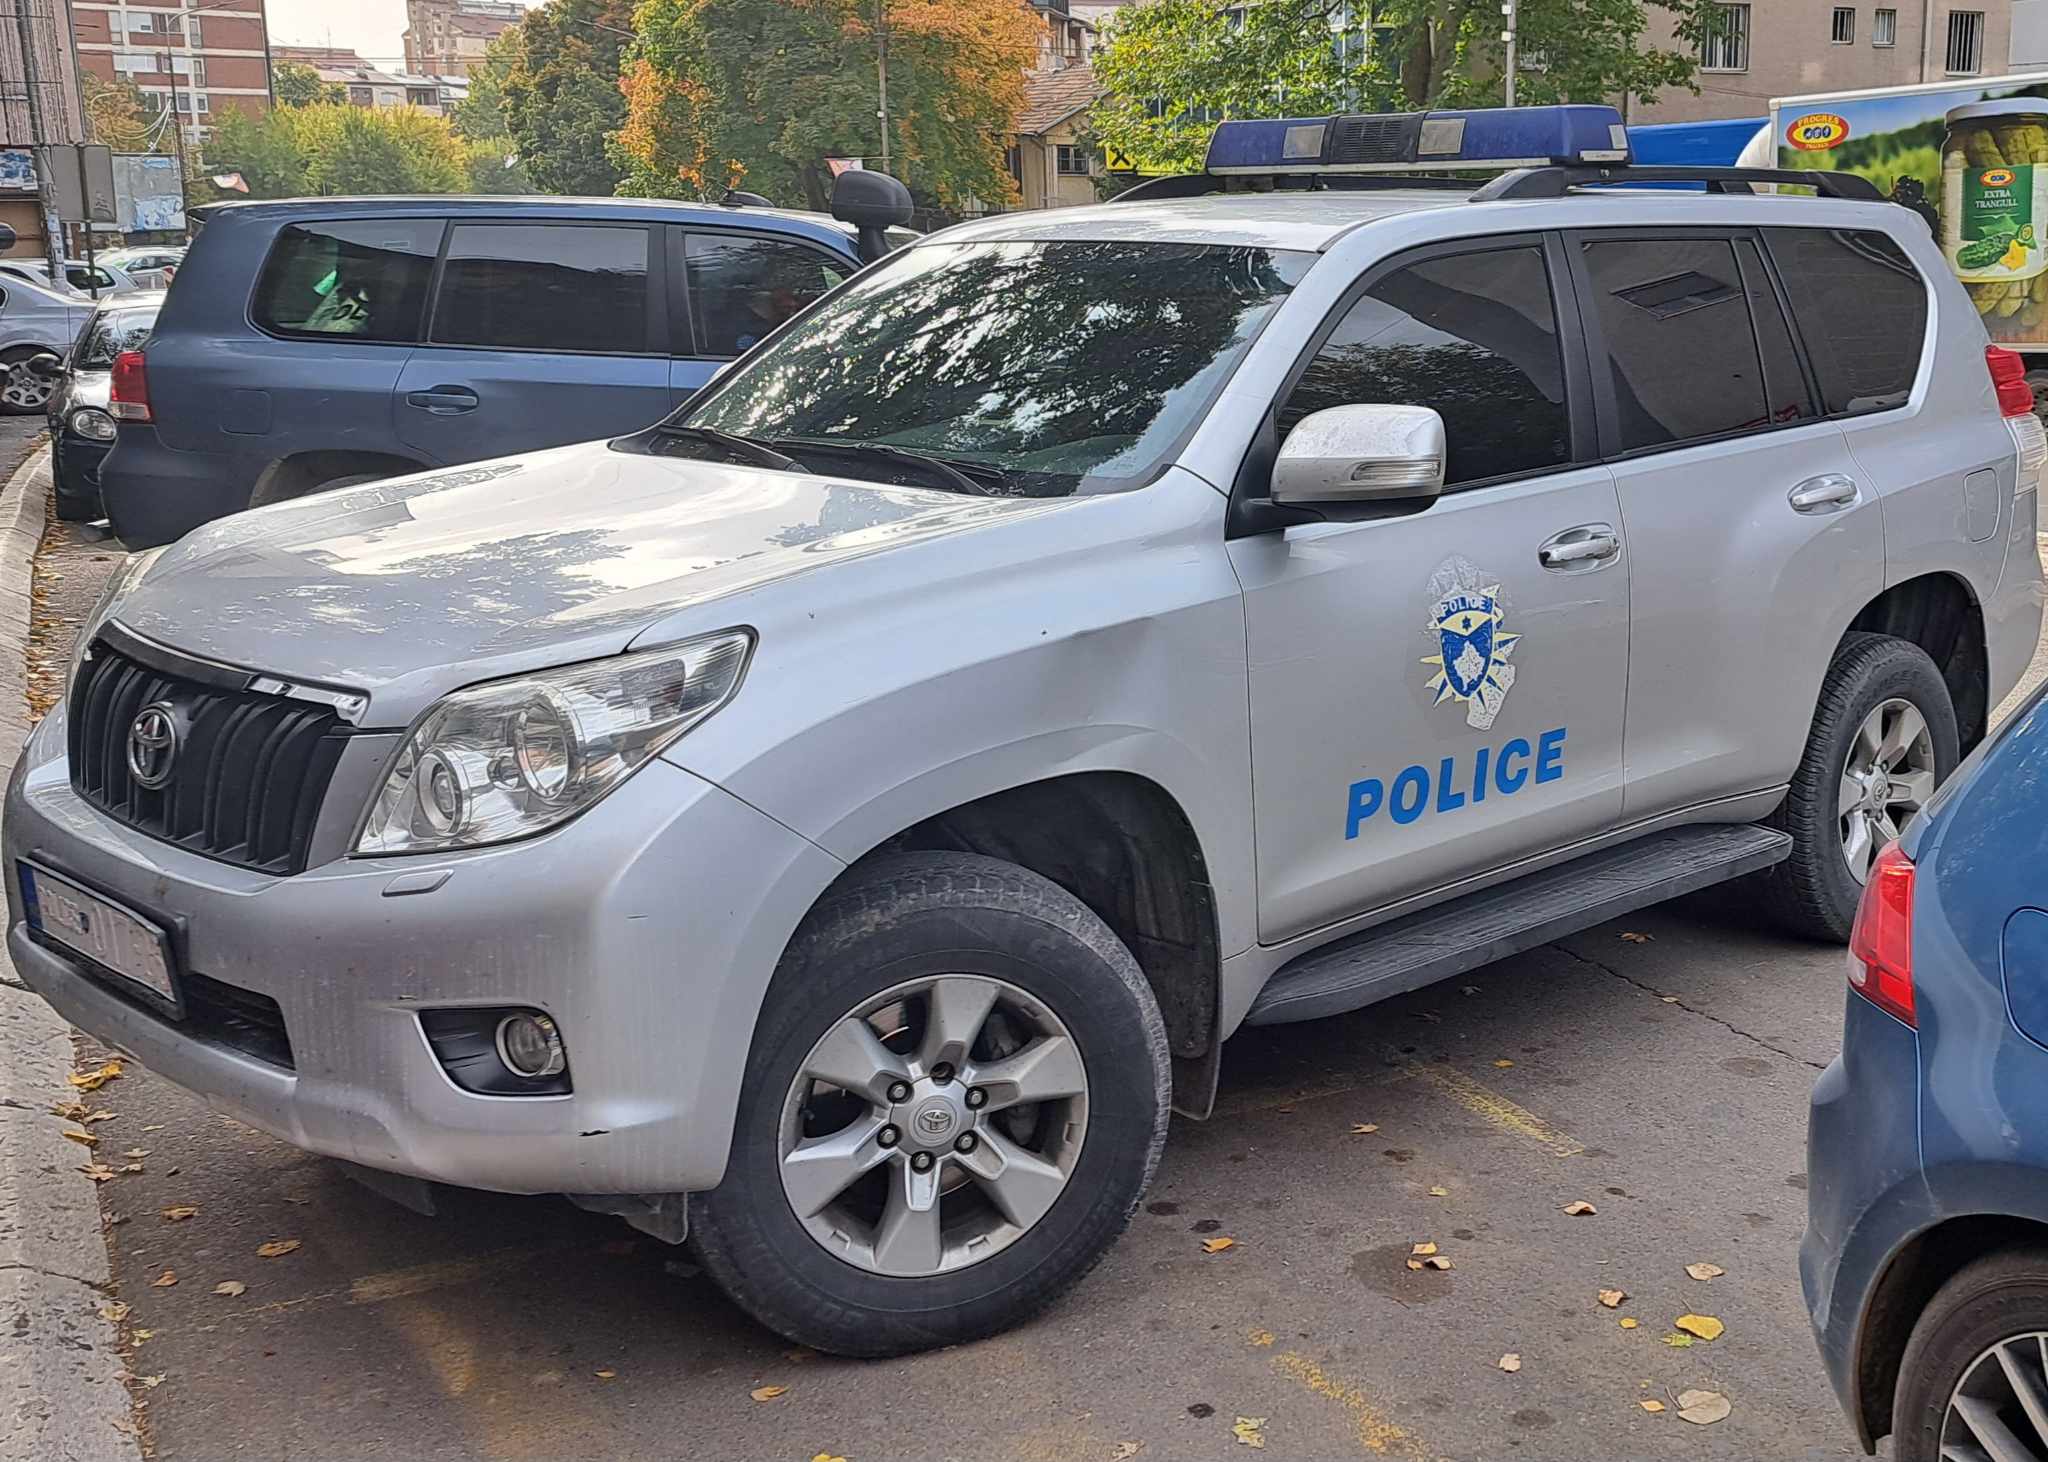 Kosovska policija / Police